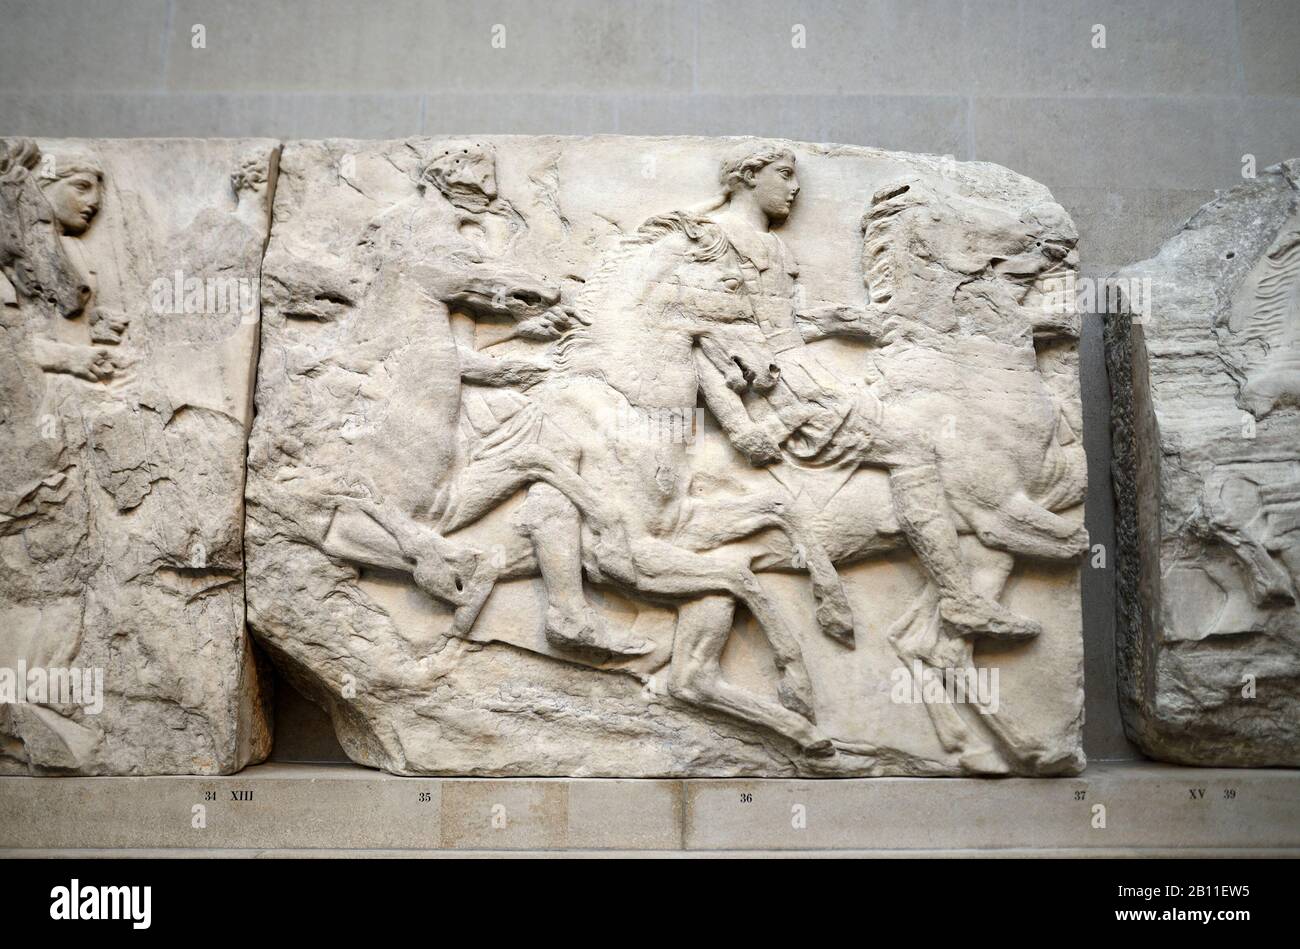 London, England, Großbritannien. British Museum, Bloomsbury. Die Parthenon Gallery - Unterkunft der Elgin Marbles. Parthenon Frieze - Reiter aus dem Südfries Stockfoto